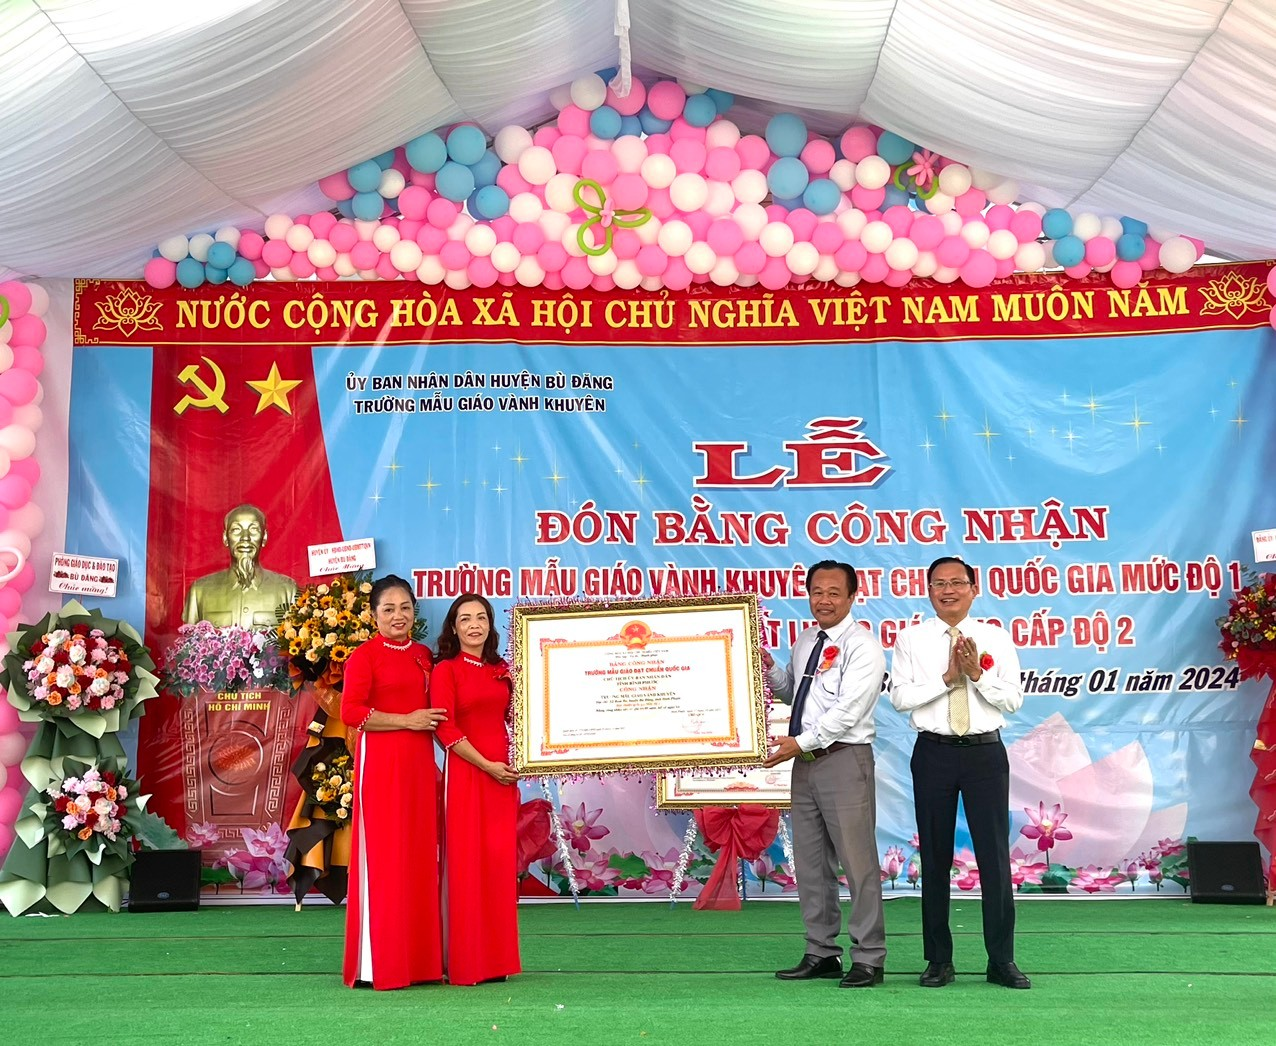 Xã Bom Bo: Trường Mẫu giáo Vành Khuyên đón Bằng công nhận trường đạt chuẩn quốc gia mức độ 1 và công nhận đạt kiểm định chất lượng giáo dục Cấp độ 2